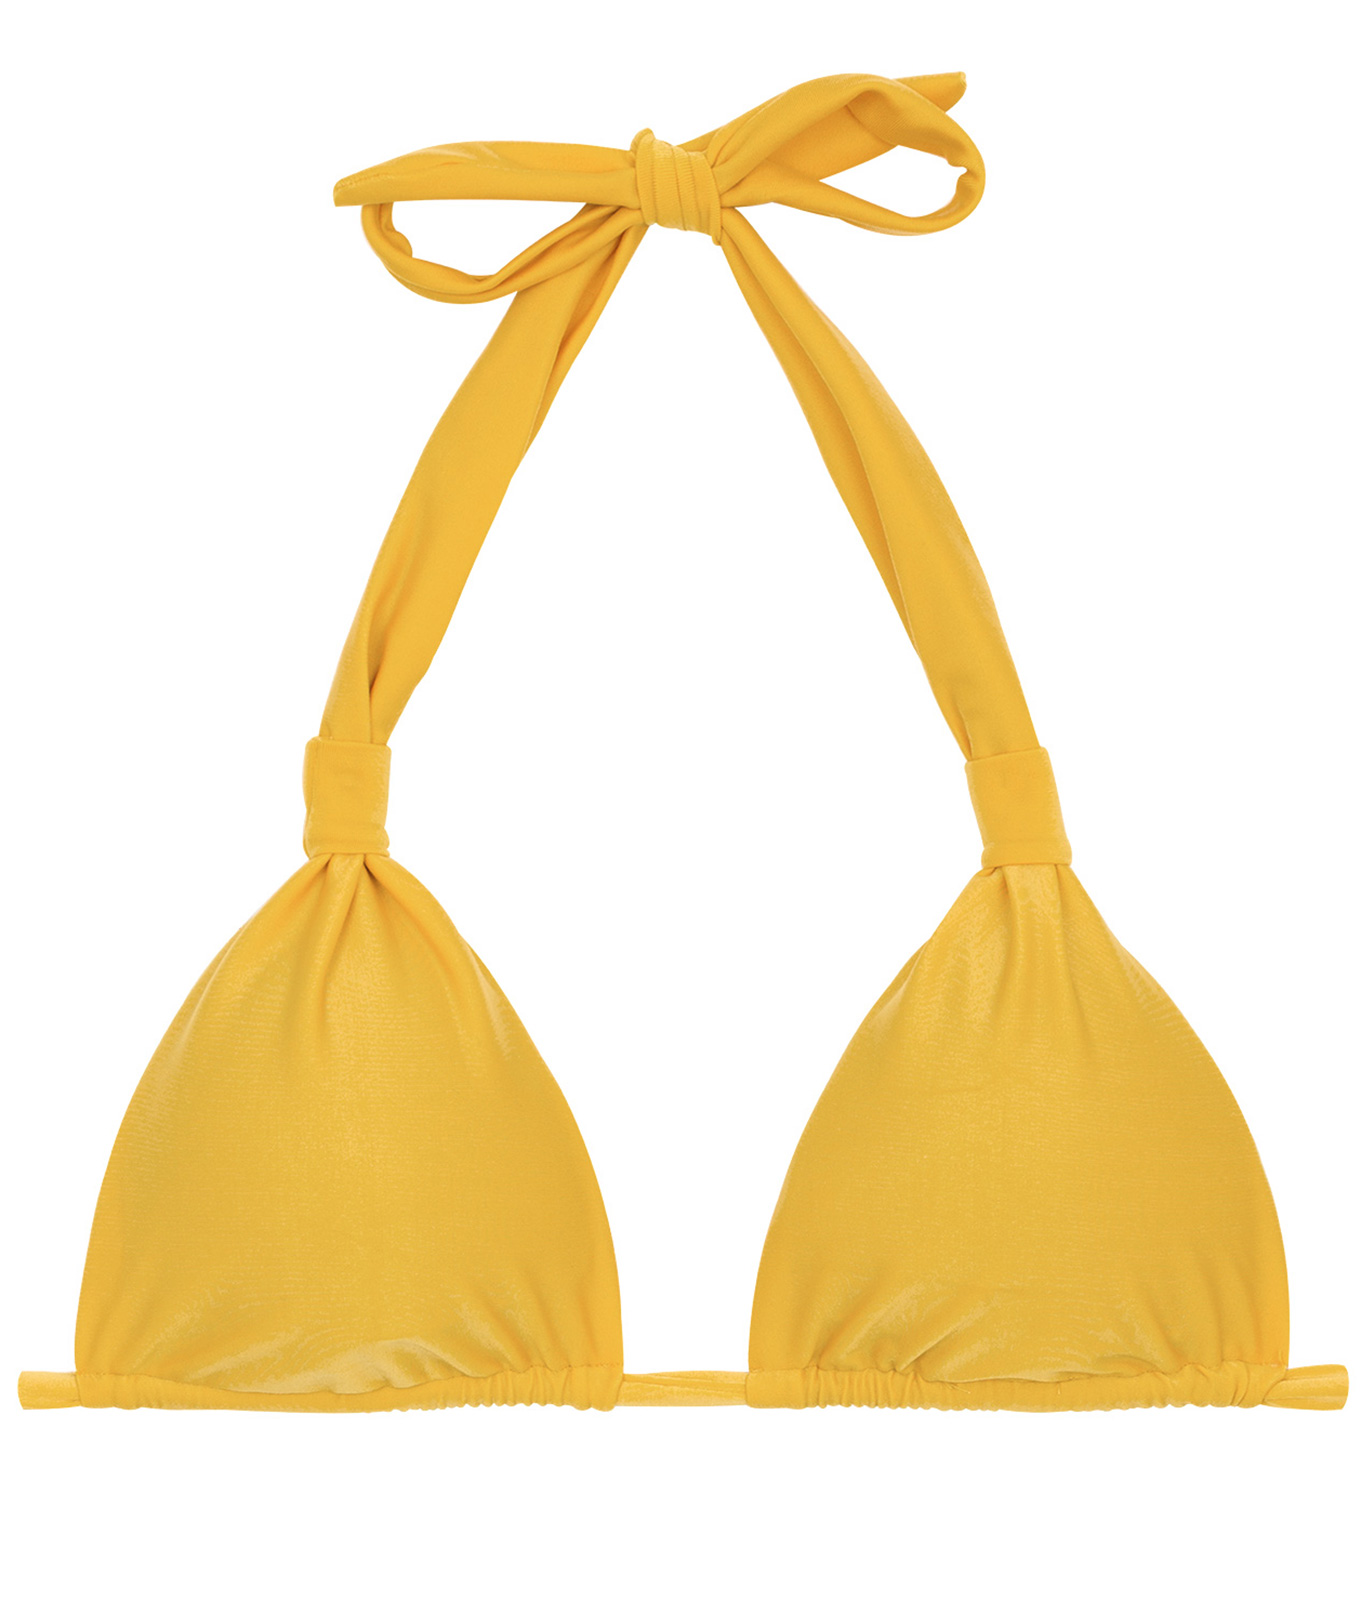 yellow halter top bikini